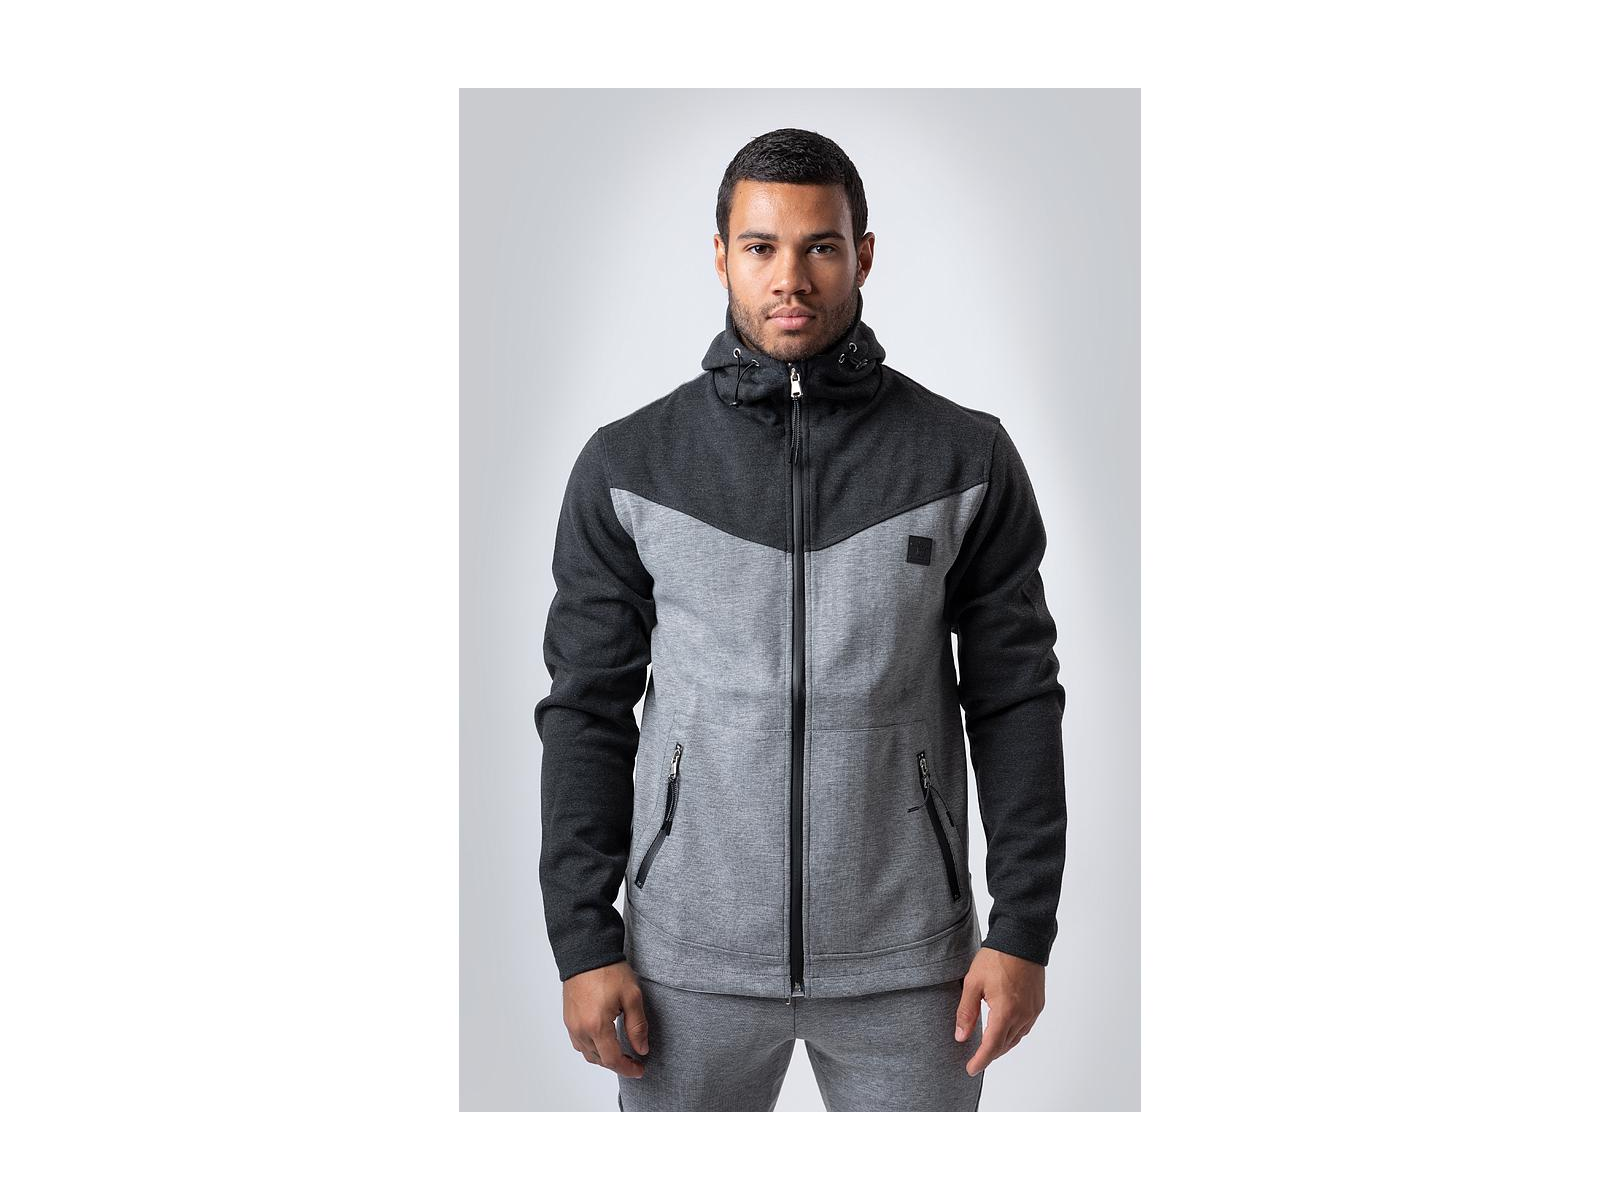 MDY Sportkleding - Tech vest (M - zwart/grijs)